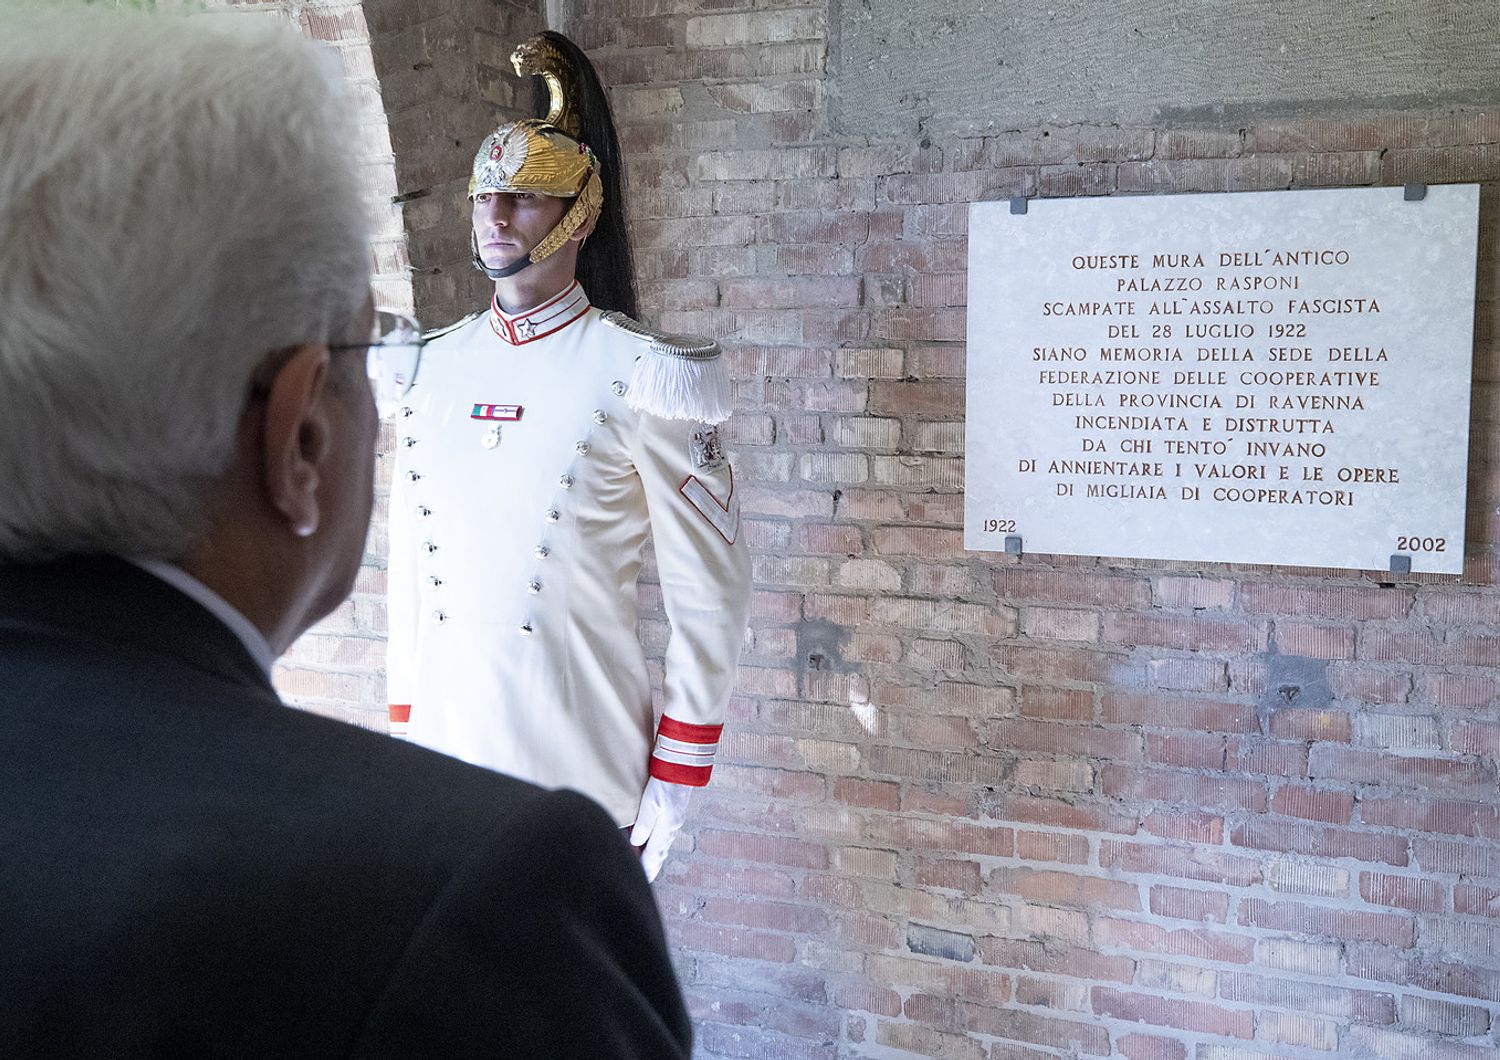 Ravenna, il Presidente Sergio Mattarella dinanzi alla targa commemorativa dell&rsquo;assalto fascista alla sede della Federazione delle Cooperative